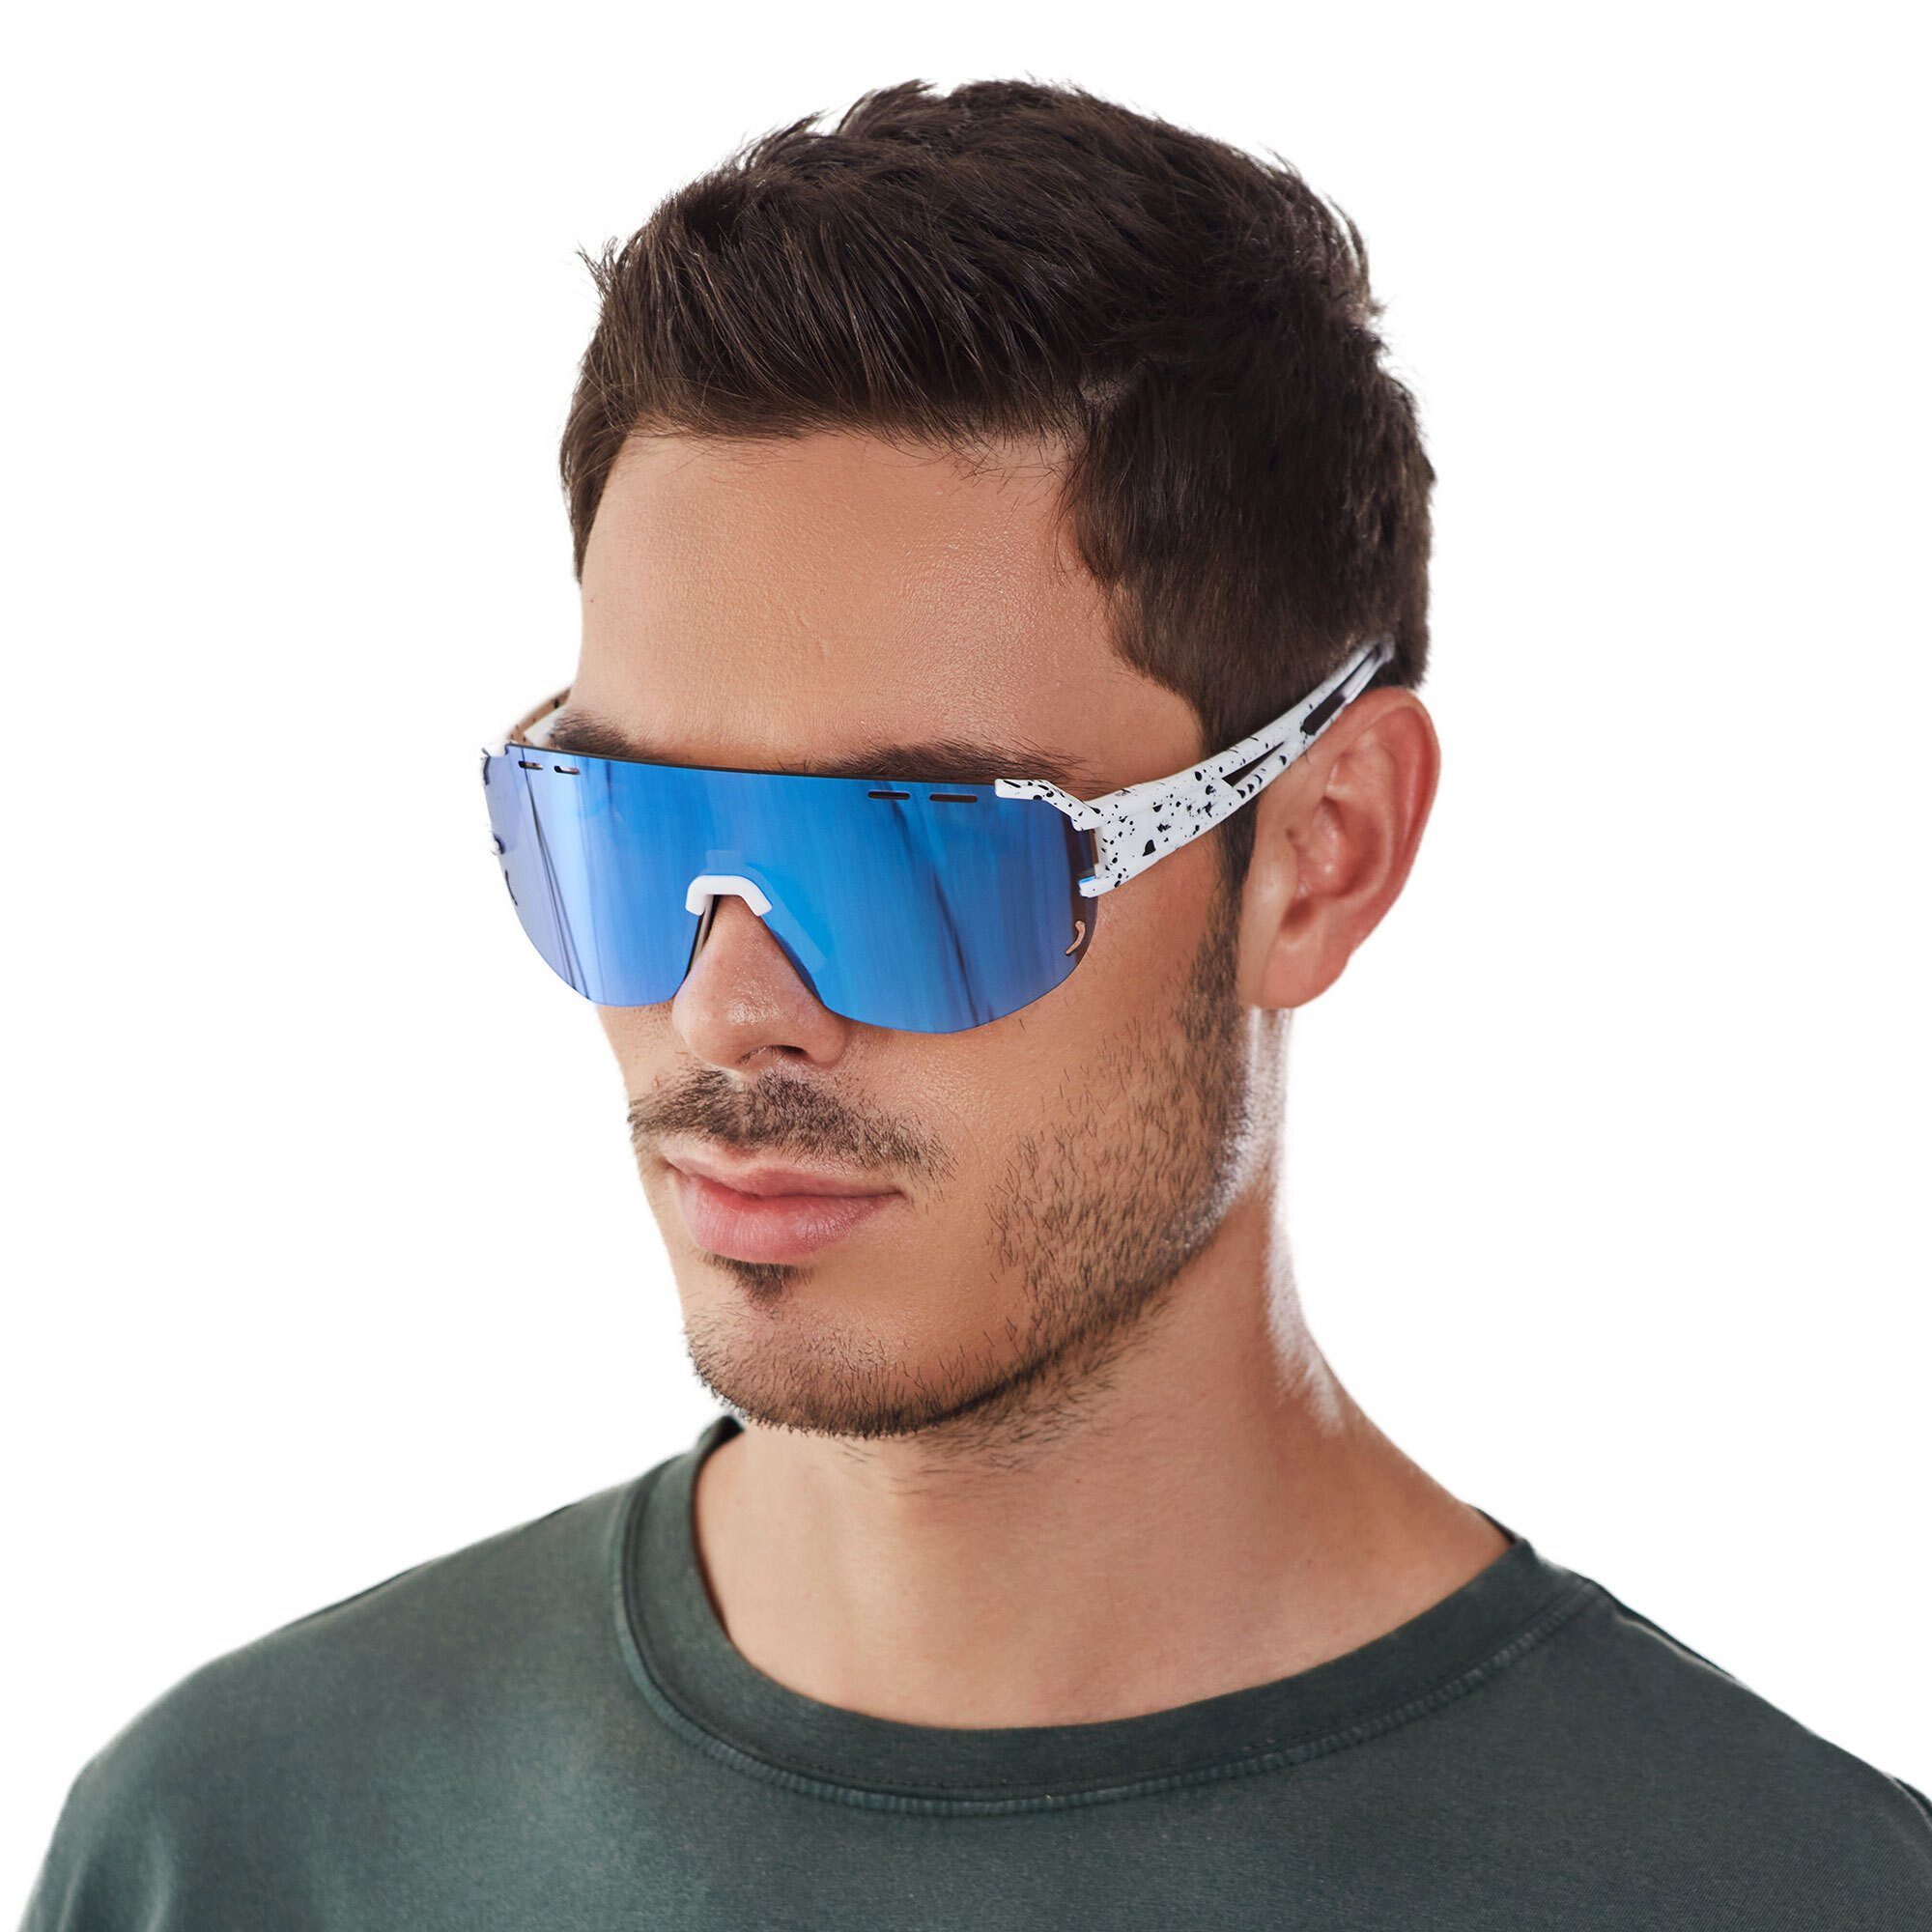 SUNGLOW blau sport-sonnenbrille YEAZ / Sportbrille weiß/blau, Sport-Sonnenbrille weiß